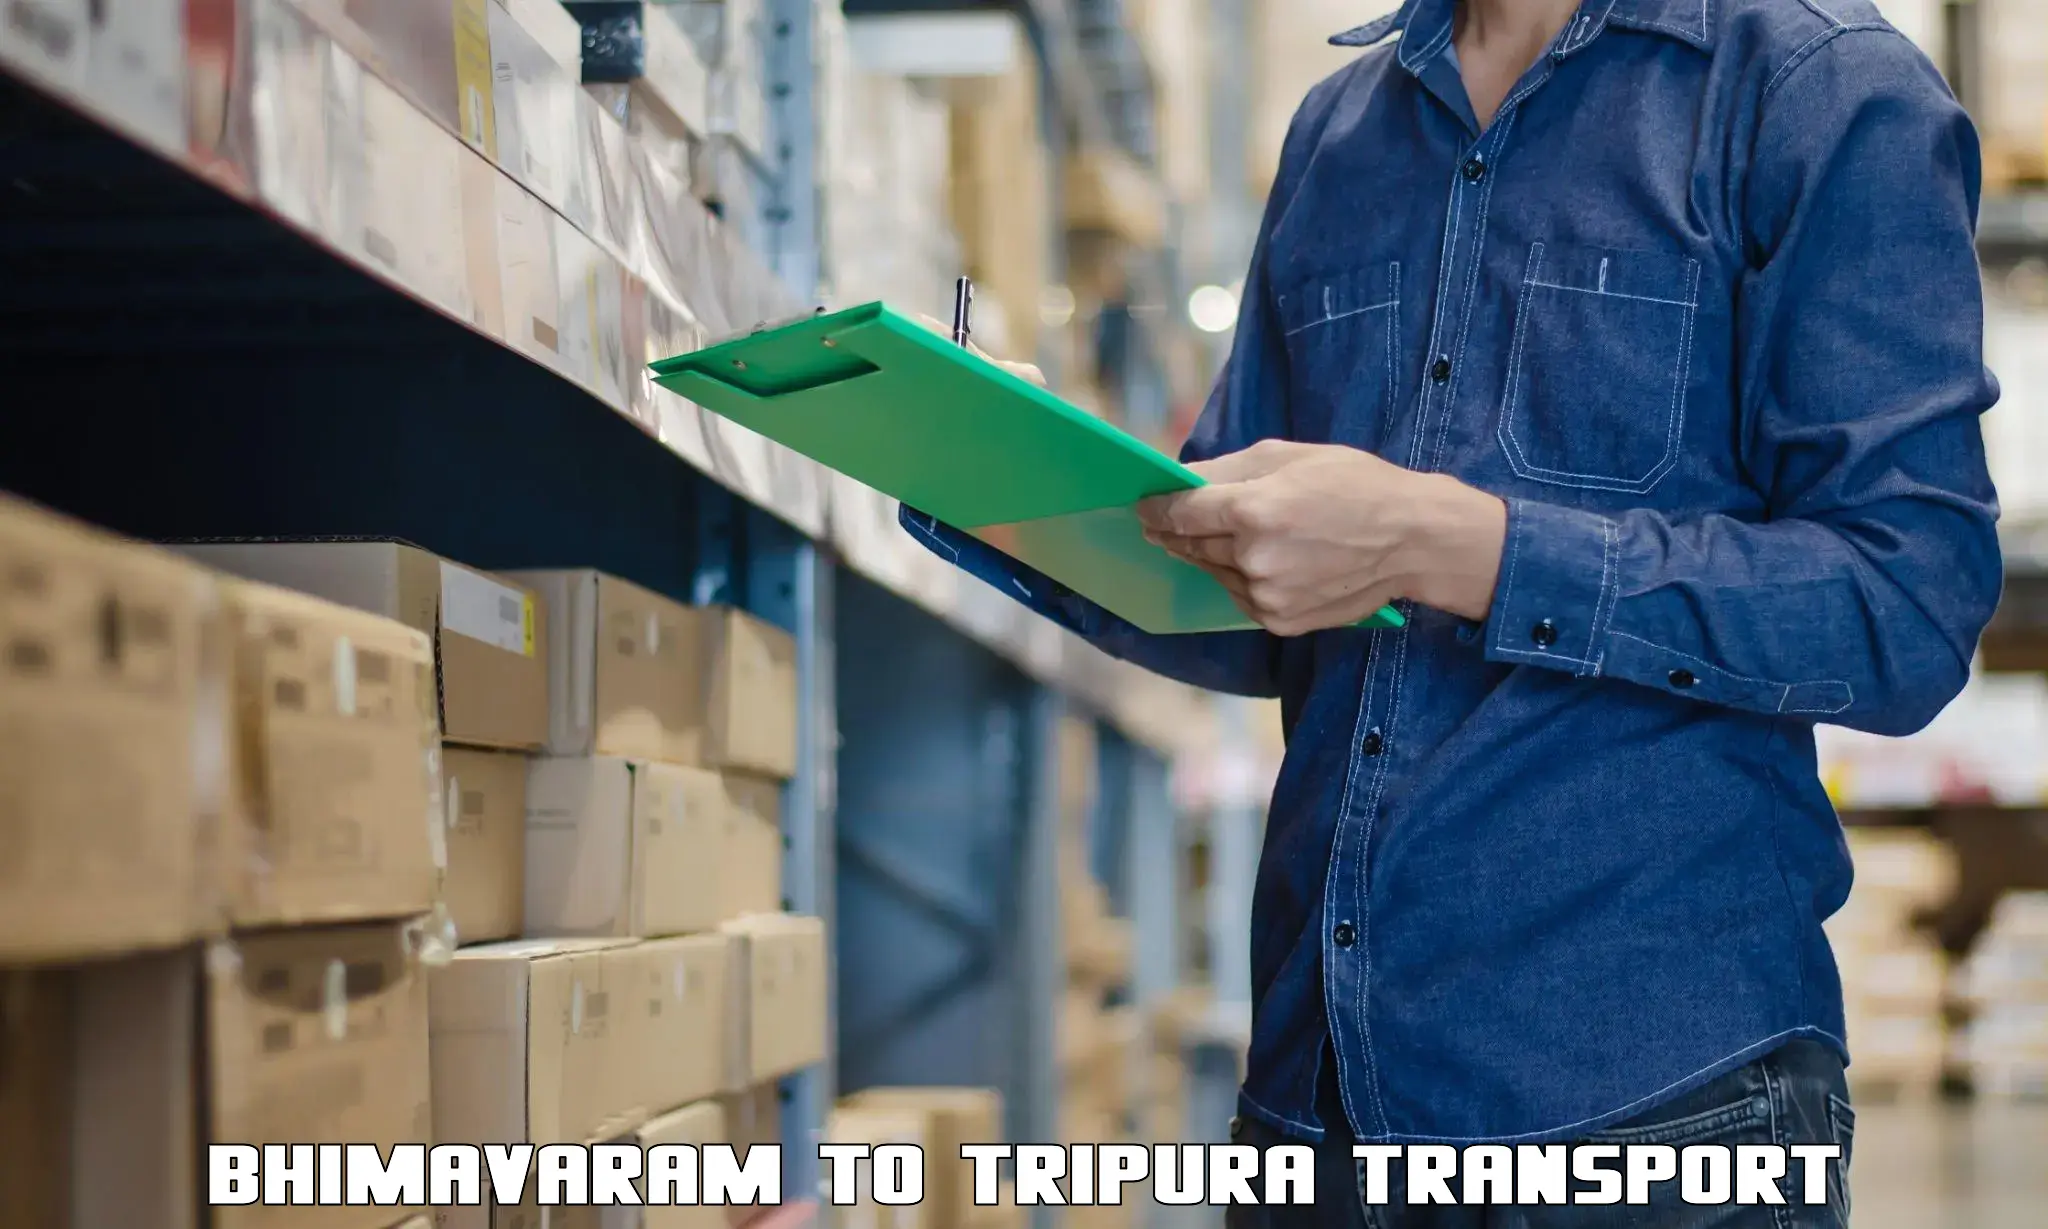 Container transport service Bhimavaram to Amarpur